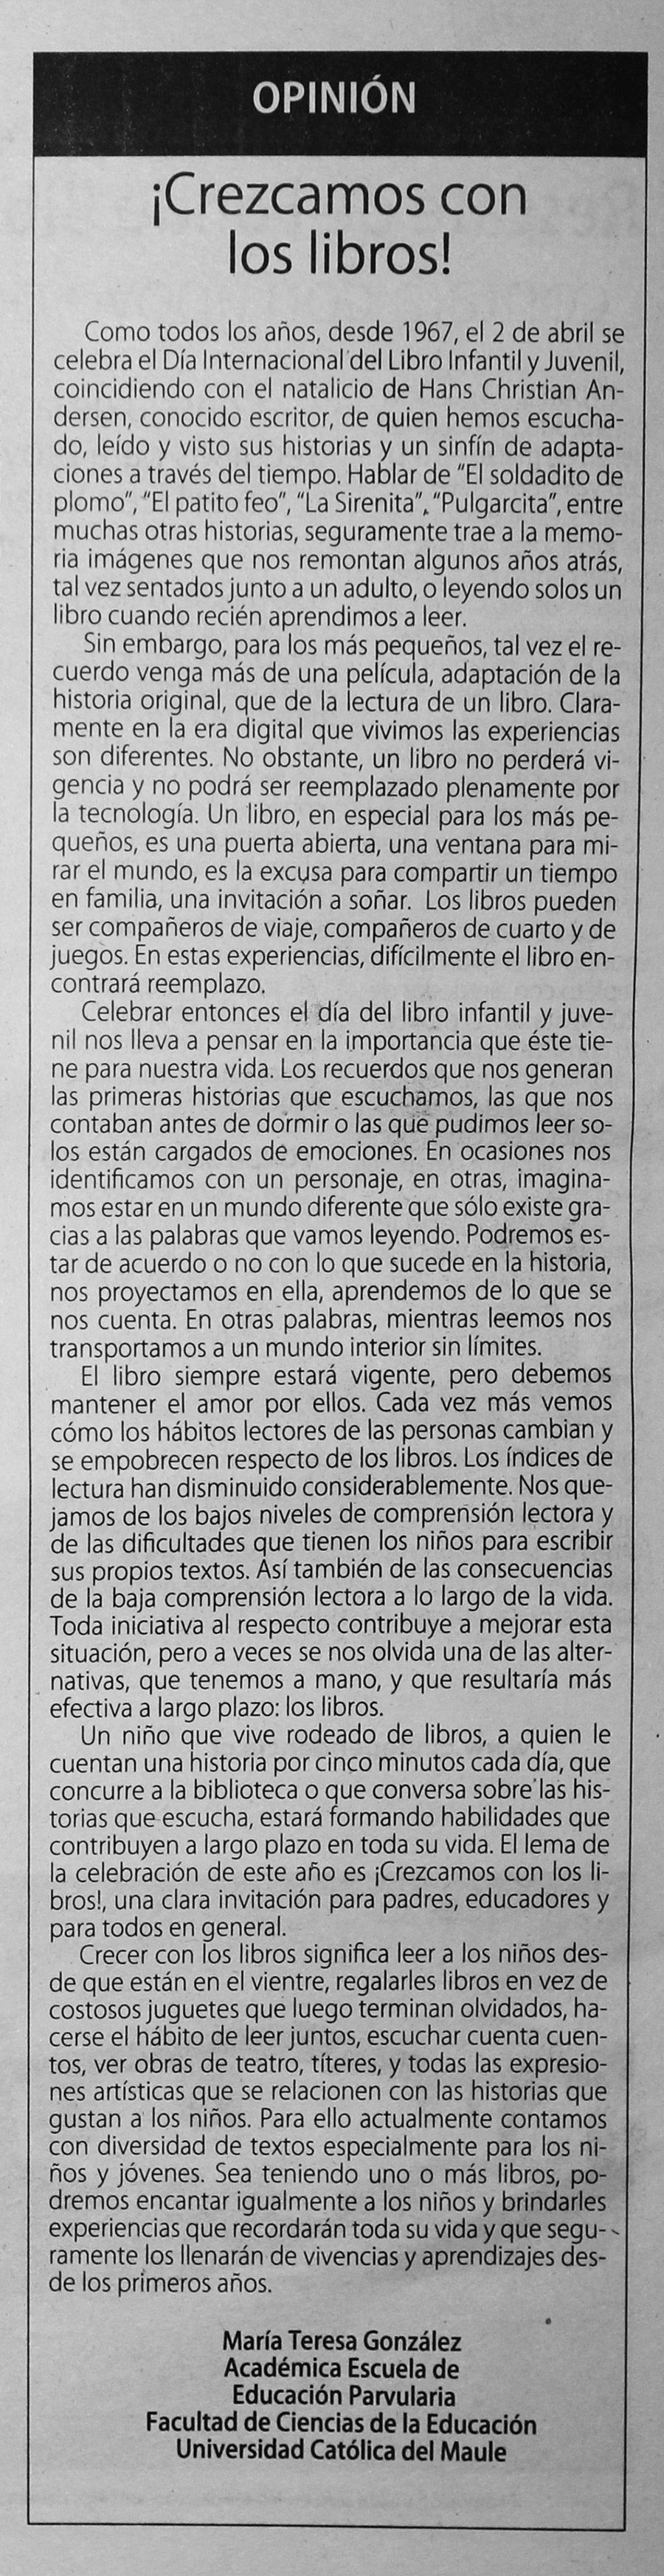 02 de abril en Diario El Centro: “Crezcamos con los libros”